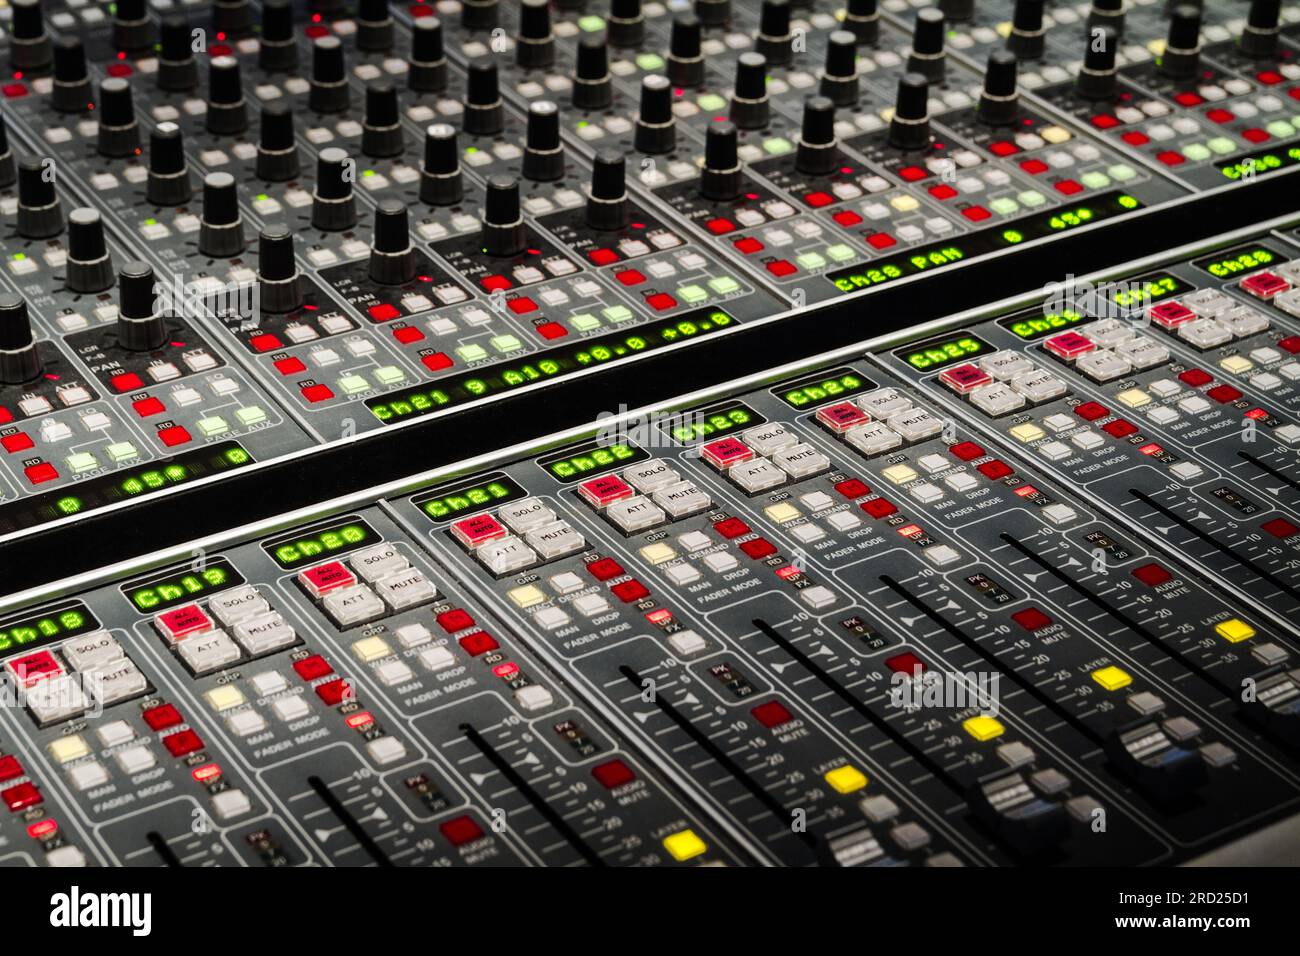 Console de mixage ou pupitre de mixage. Table de mixage audio dans un studio d'enregistrement. Banque D'Images